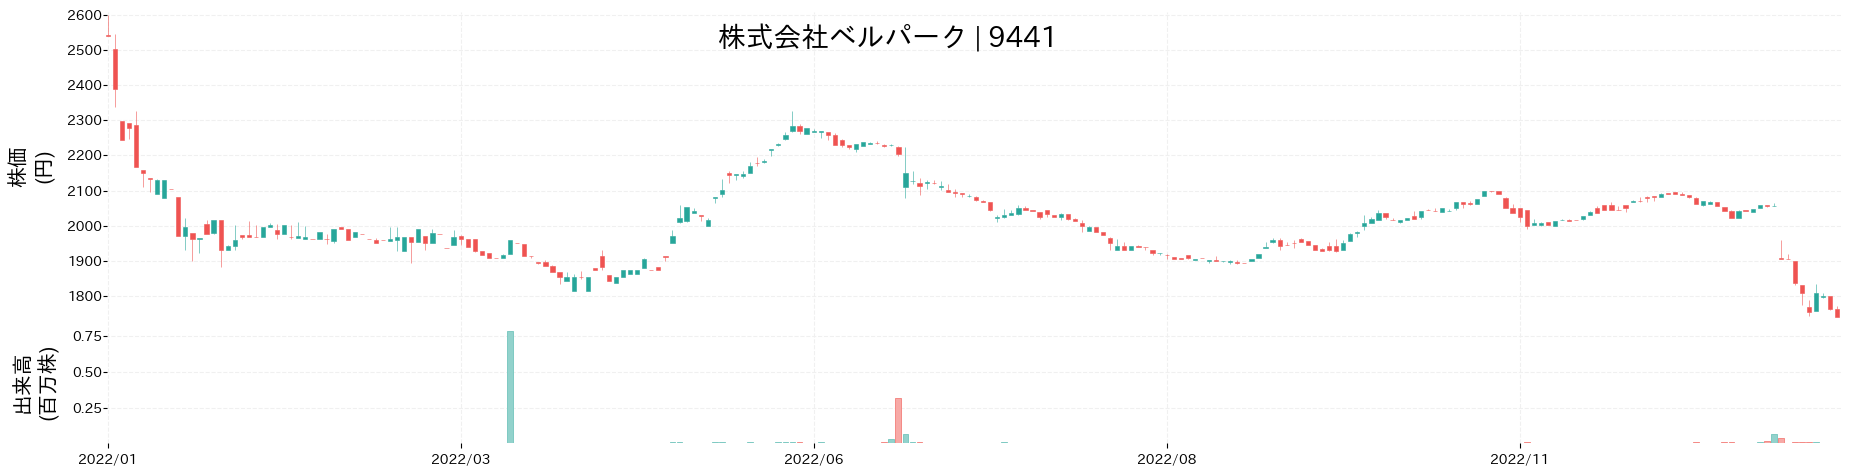 ベルパークの株価推移(2022)